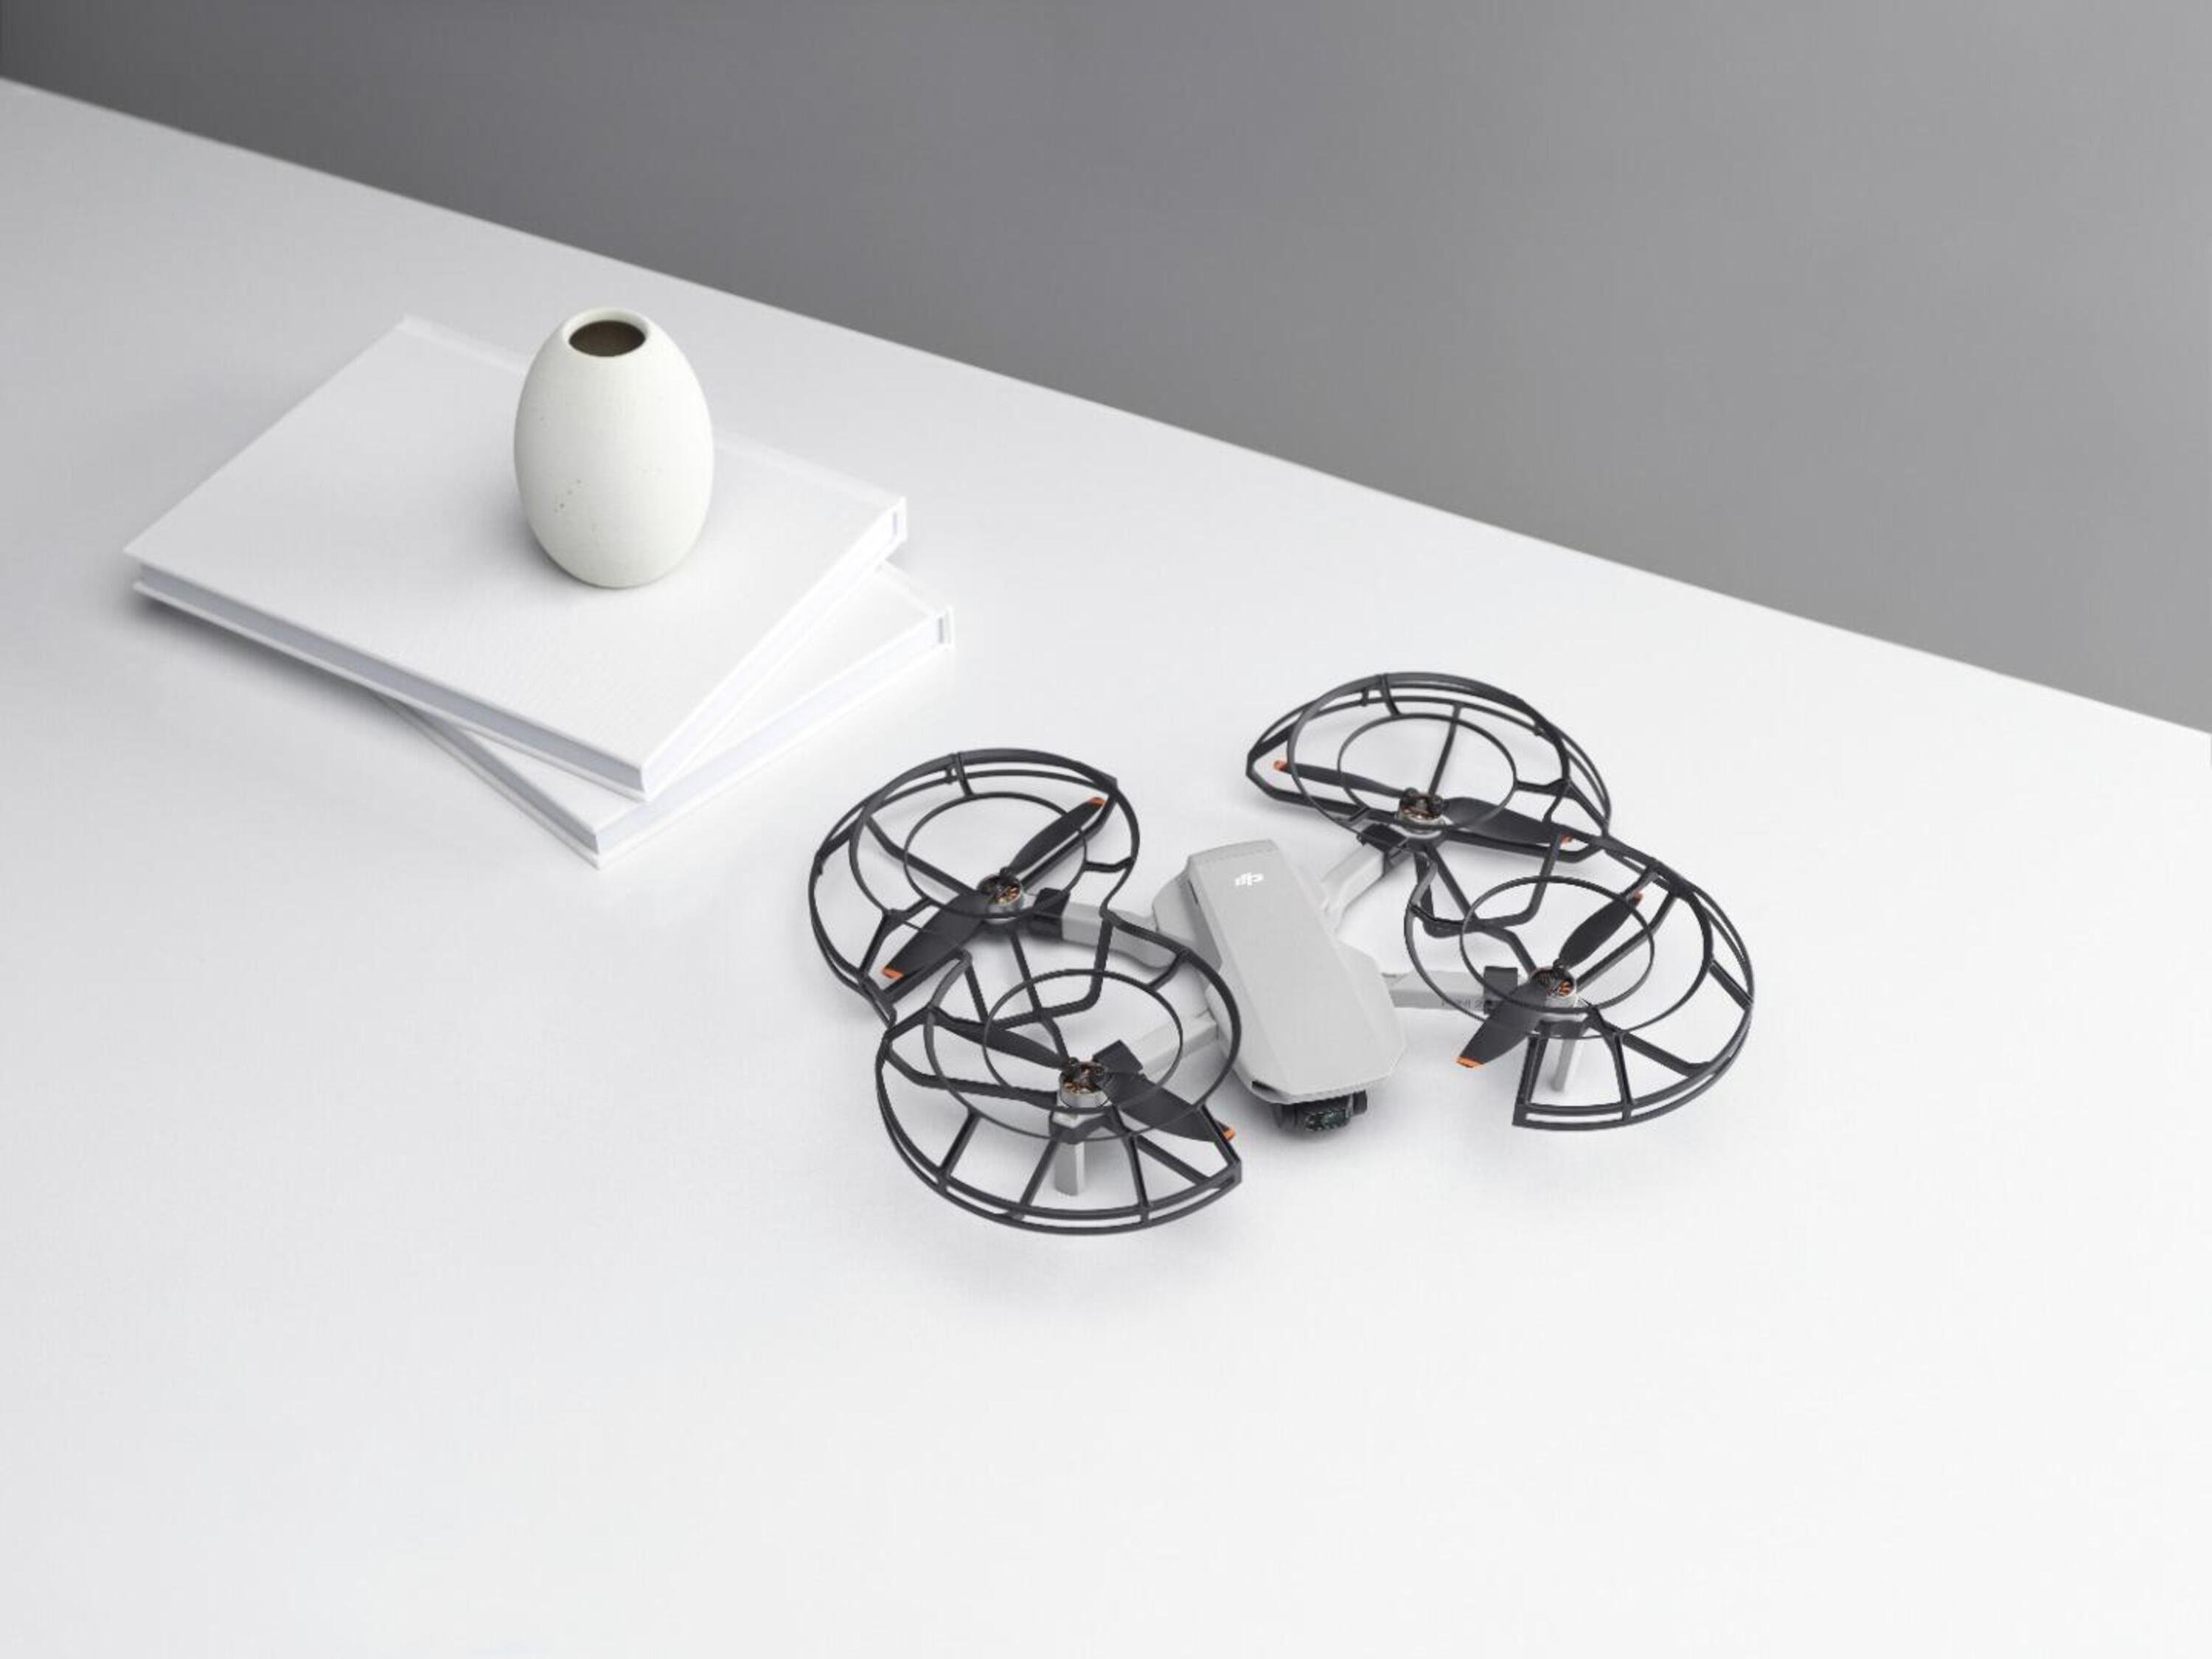 Un nuovo drone piccolo e facile per tutti ma completo? DJI Mini 2